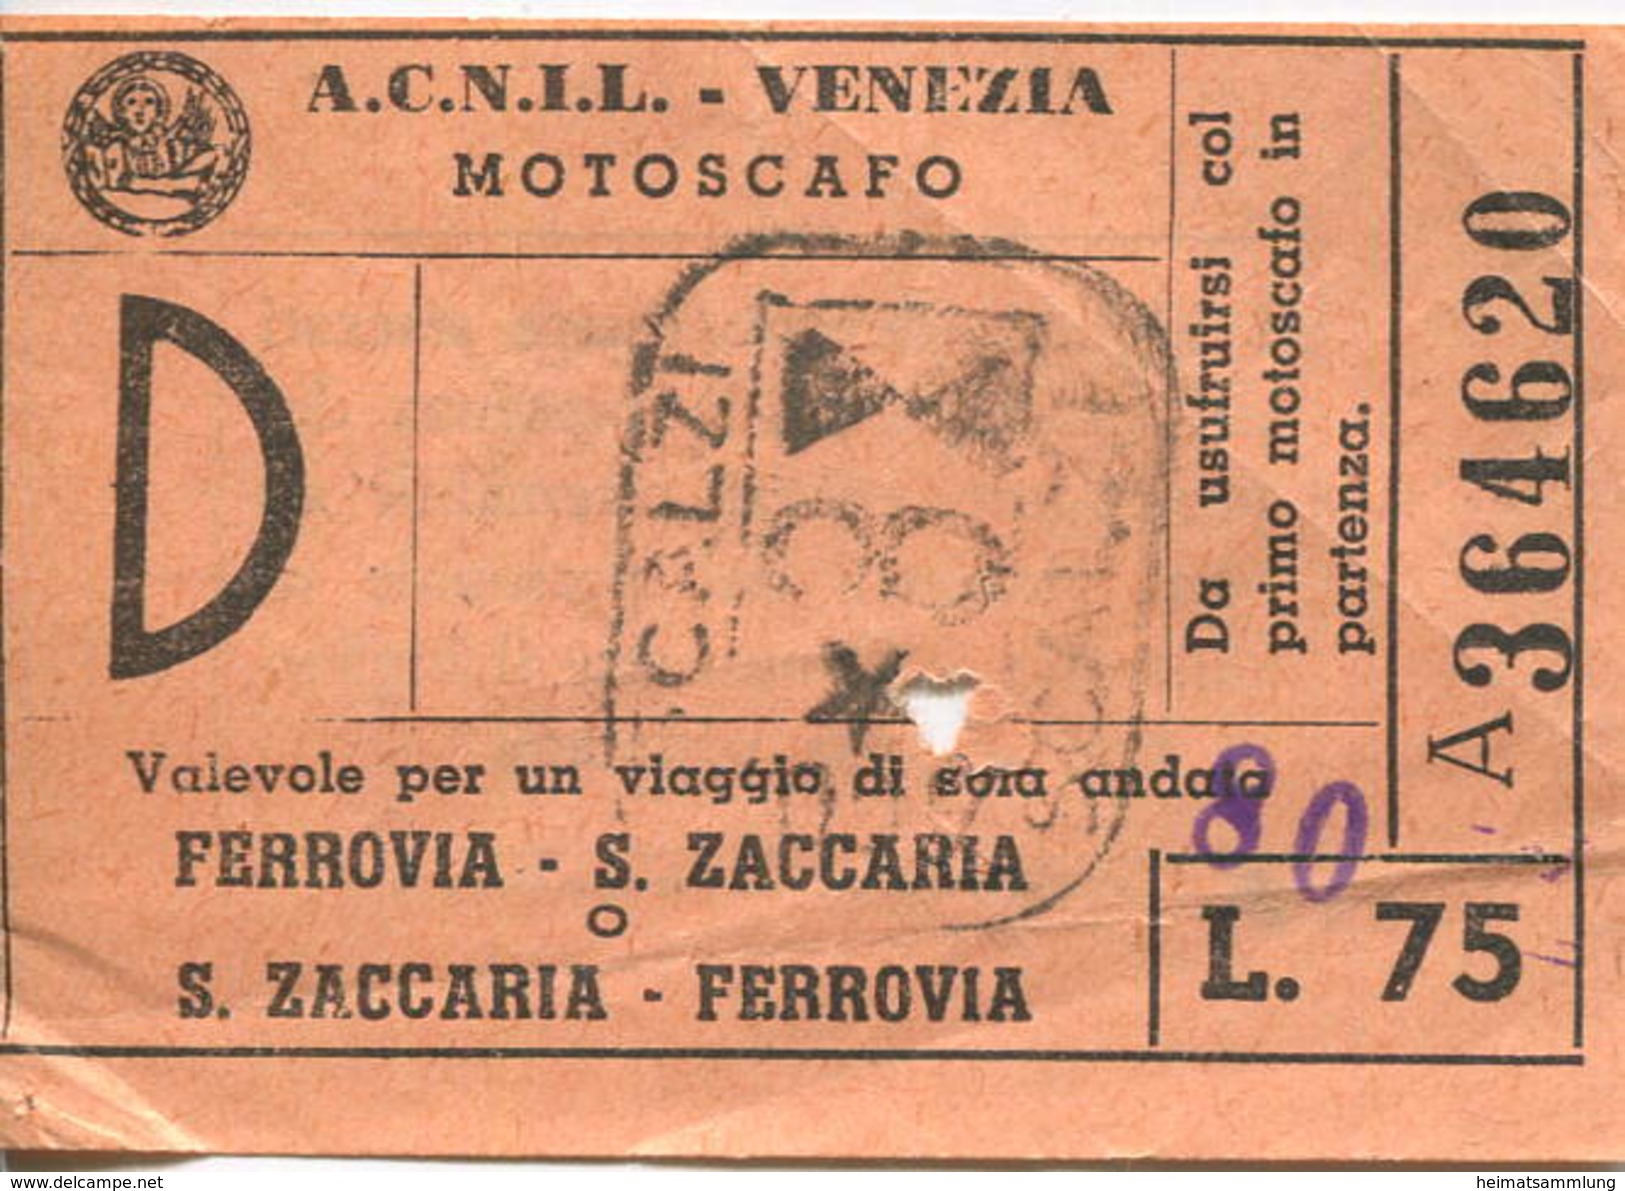 Italien - A.C.N.I.L. - Venezia - Motoscafo - Ferrovia - S. Zaccaria - Fahrschein Biglietto L. 75 - Europe